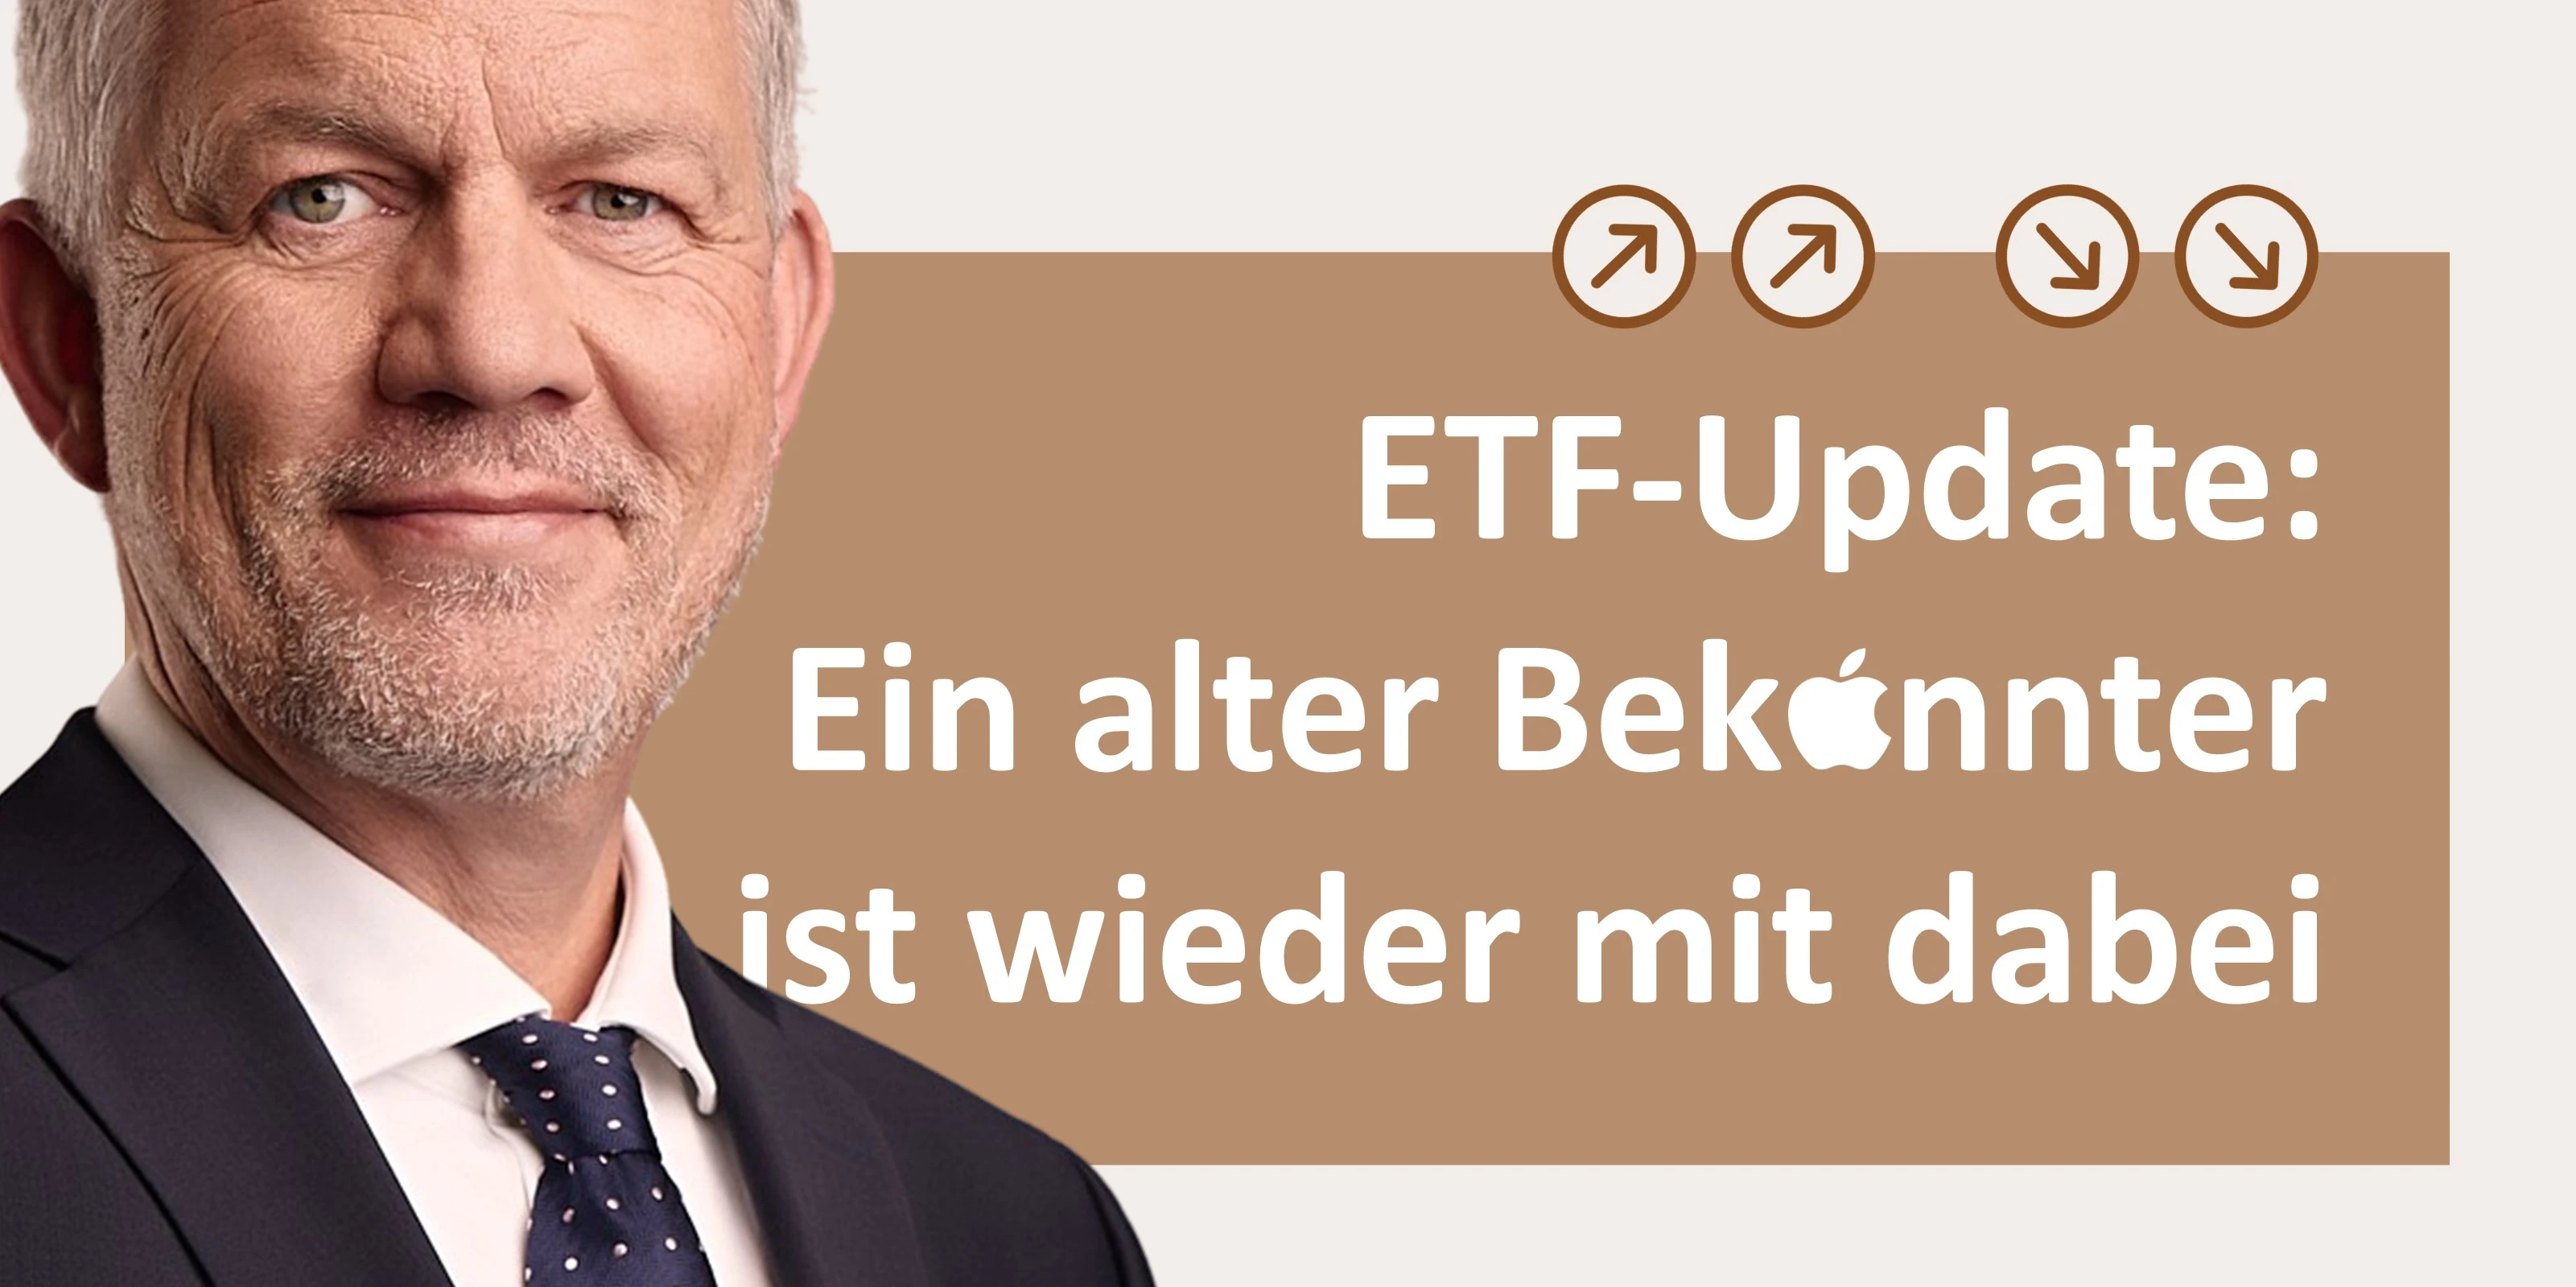 Heiko Böhmer zum ETF-Update